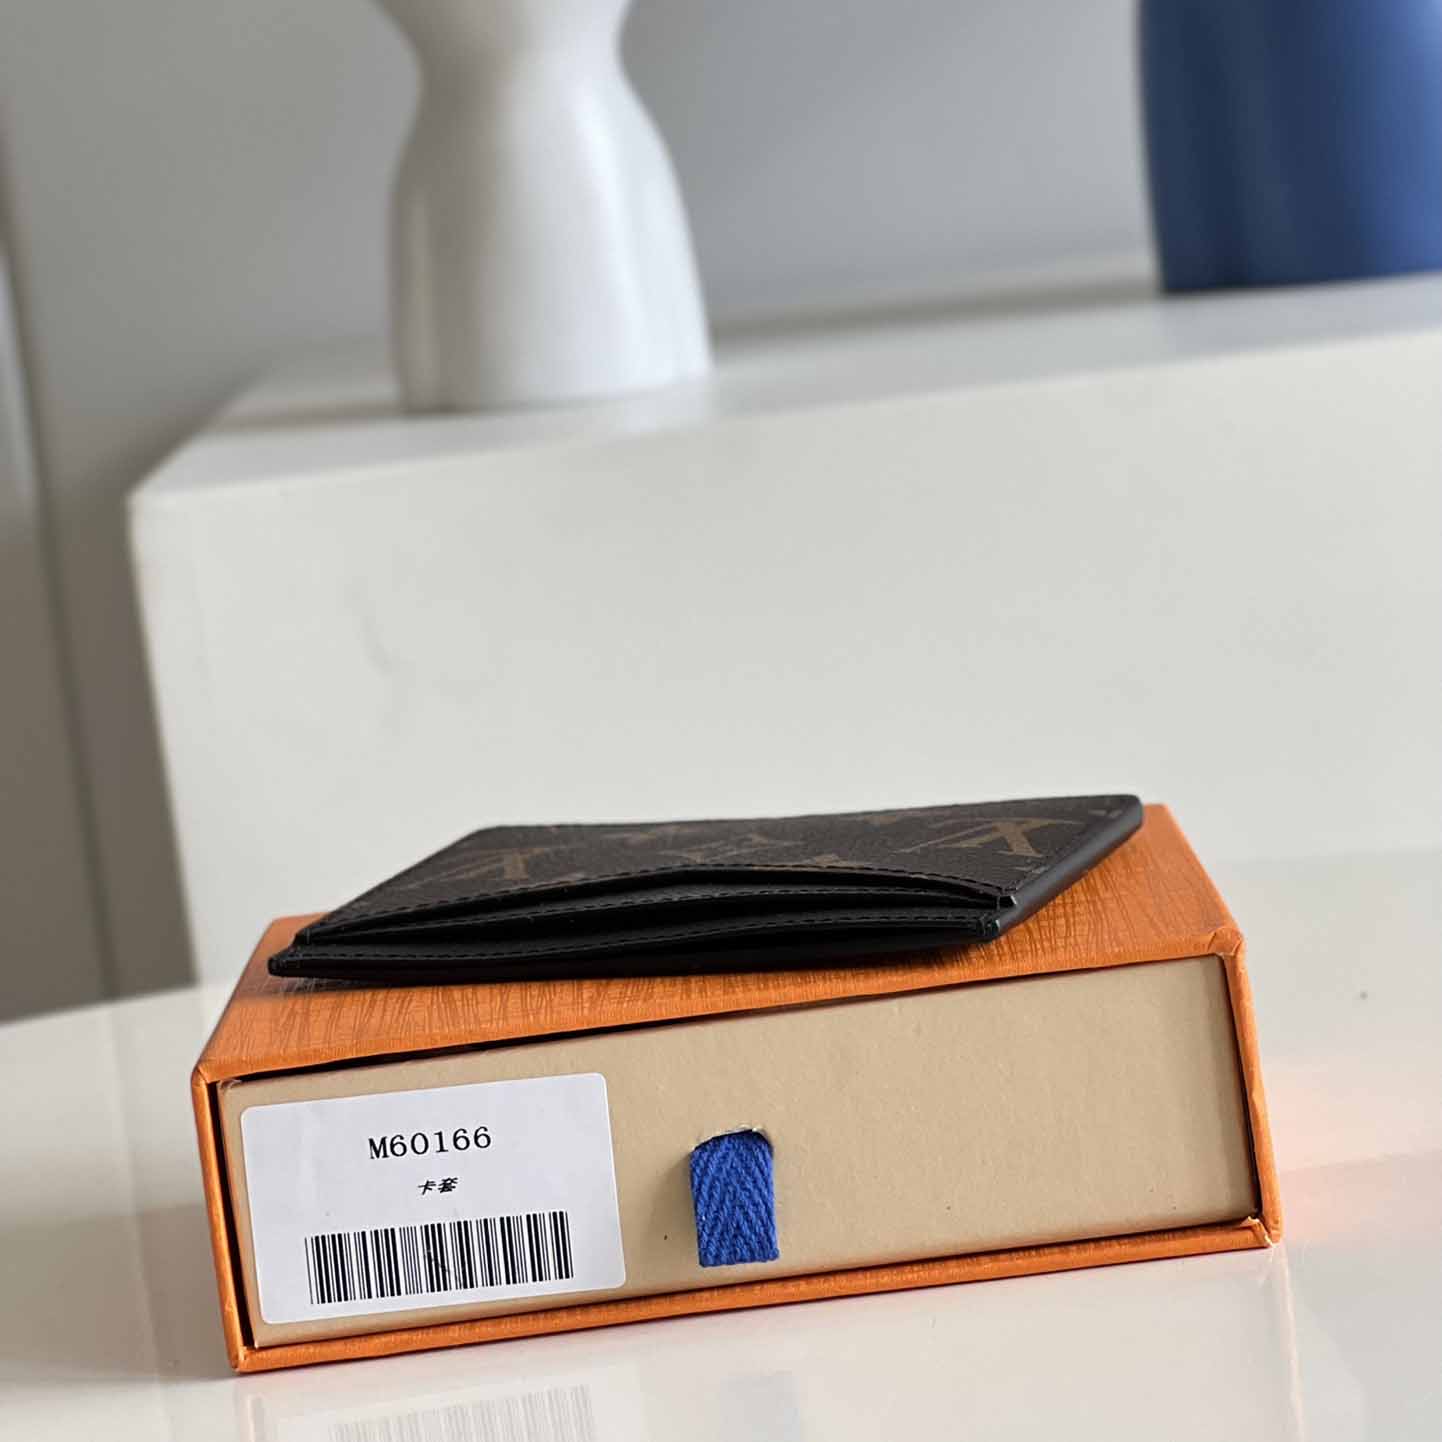 Louis Vuitton Neo Card Holder (11 x 7 x 0.6cm)        M60166 - DesignerGu